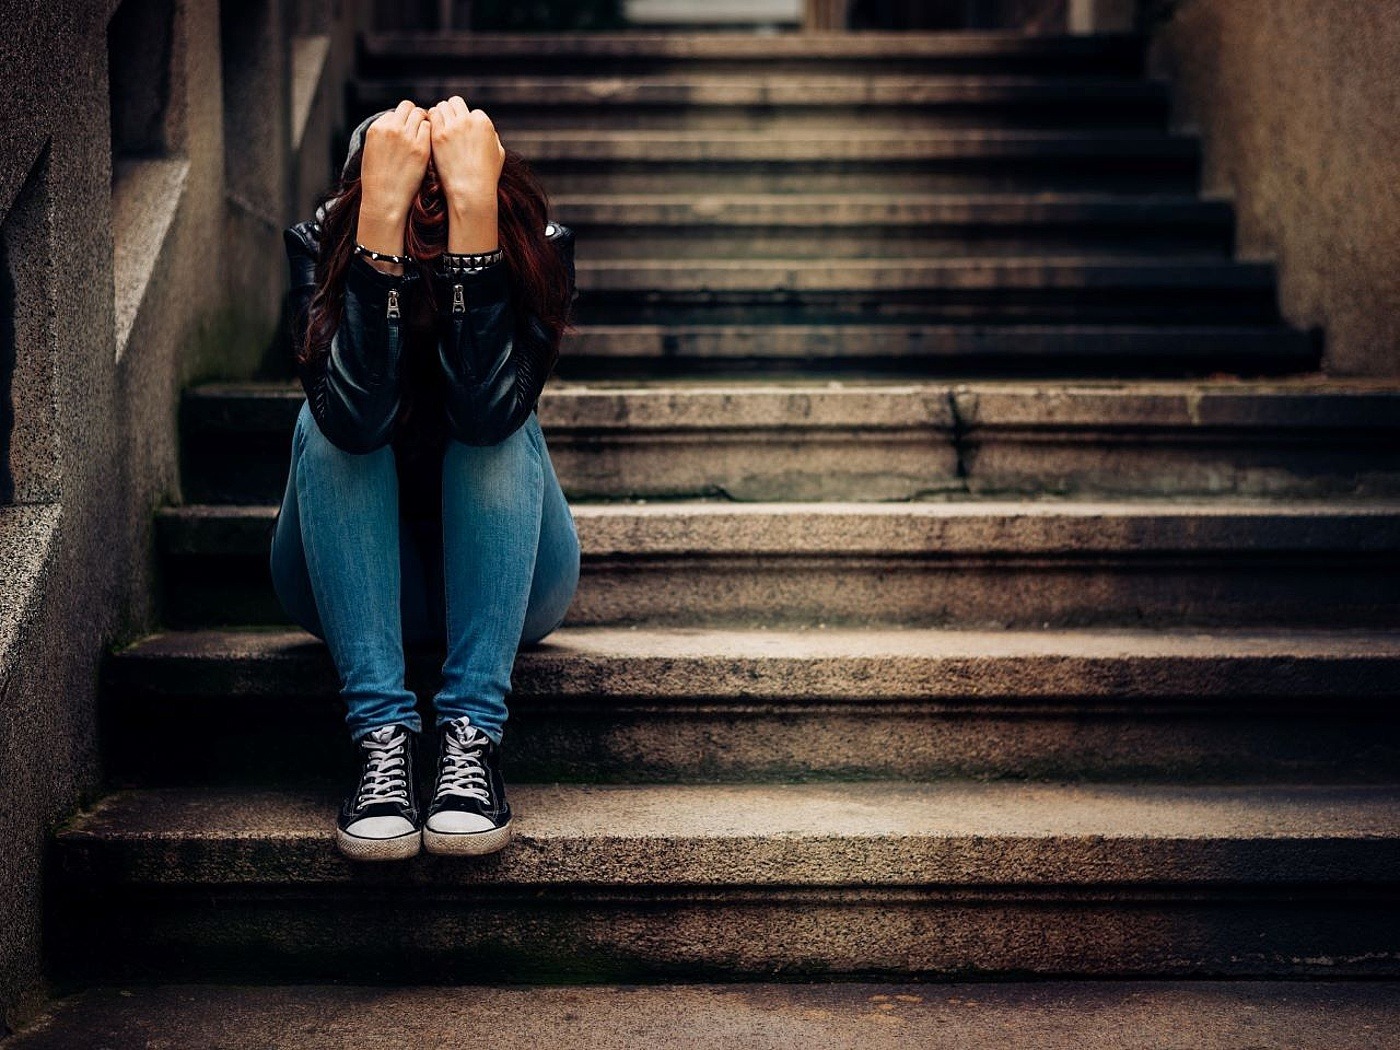 Junge Frau sitzt mit dem Kopf in ihren Händen traurig auf einer Treppe